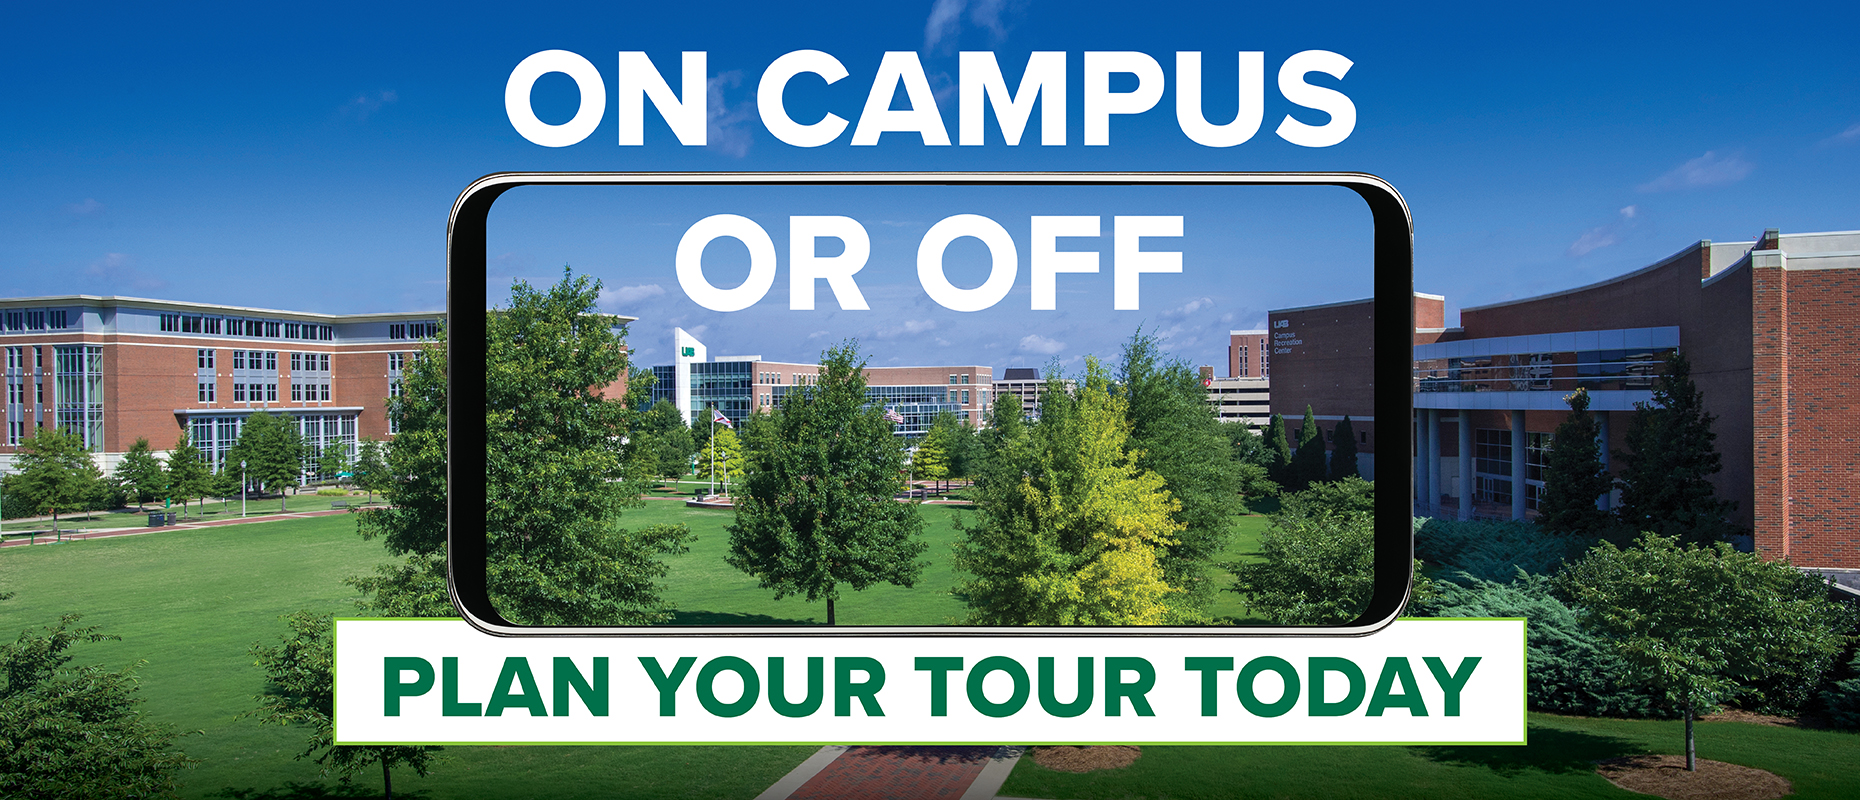 uab campus tour dates